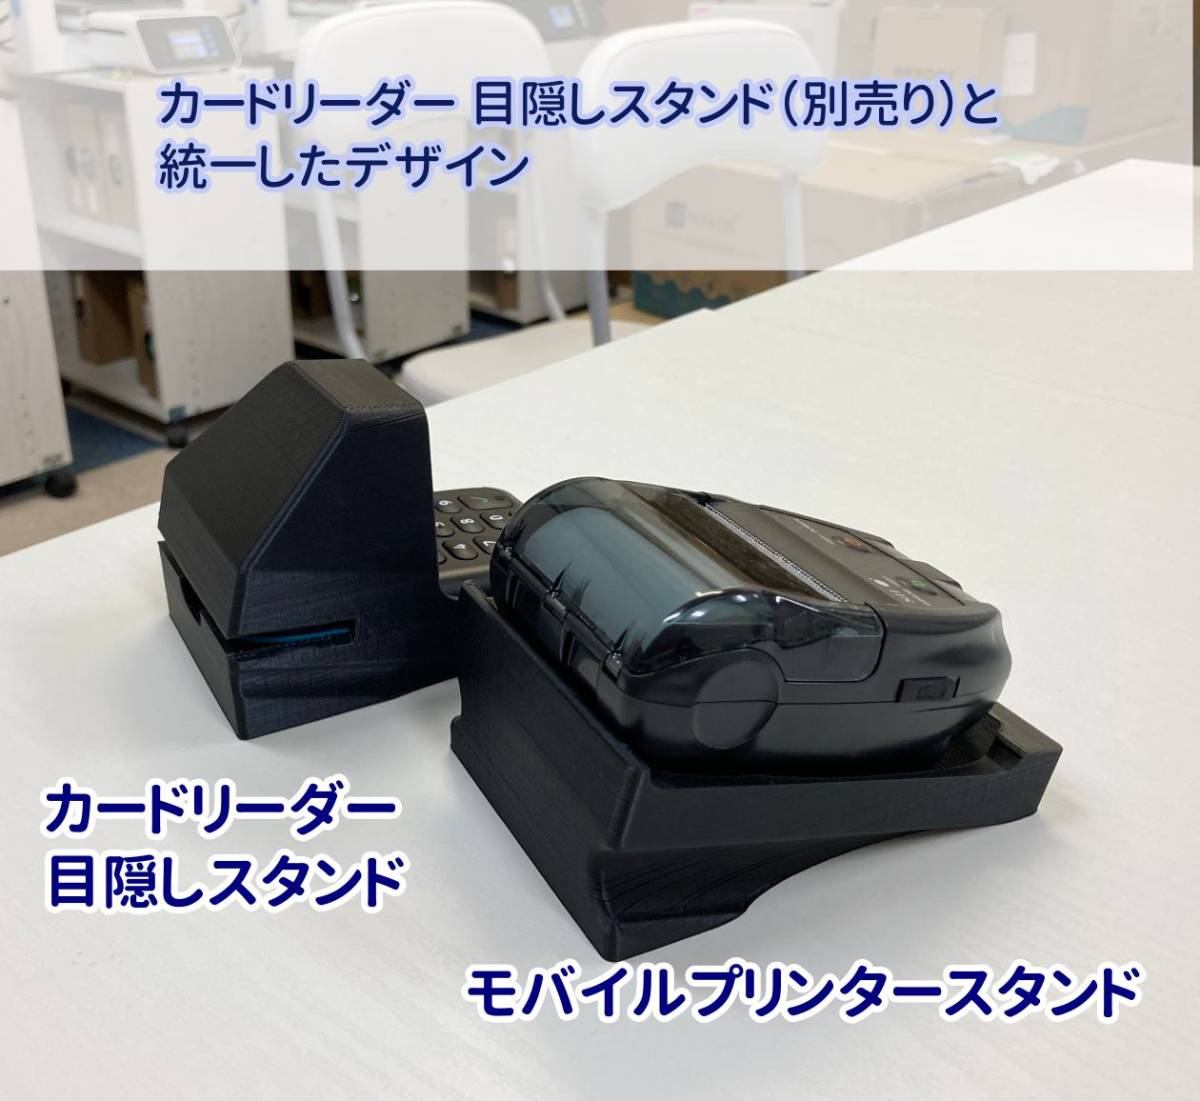  воздушный reji мобильный re сиденье принтер подставка чёрный анонимность рассылка b